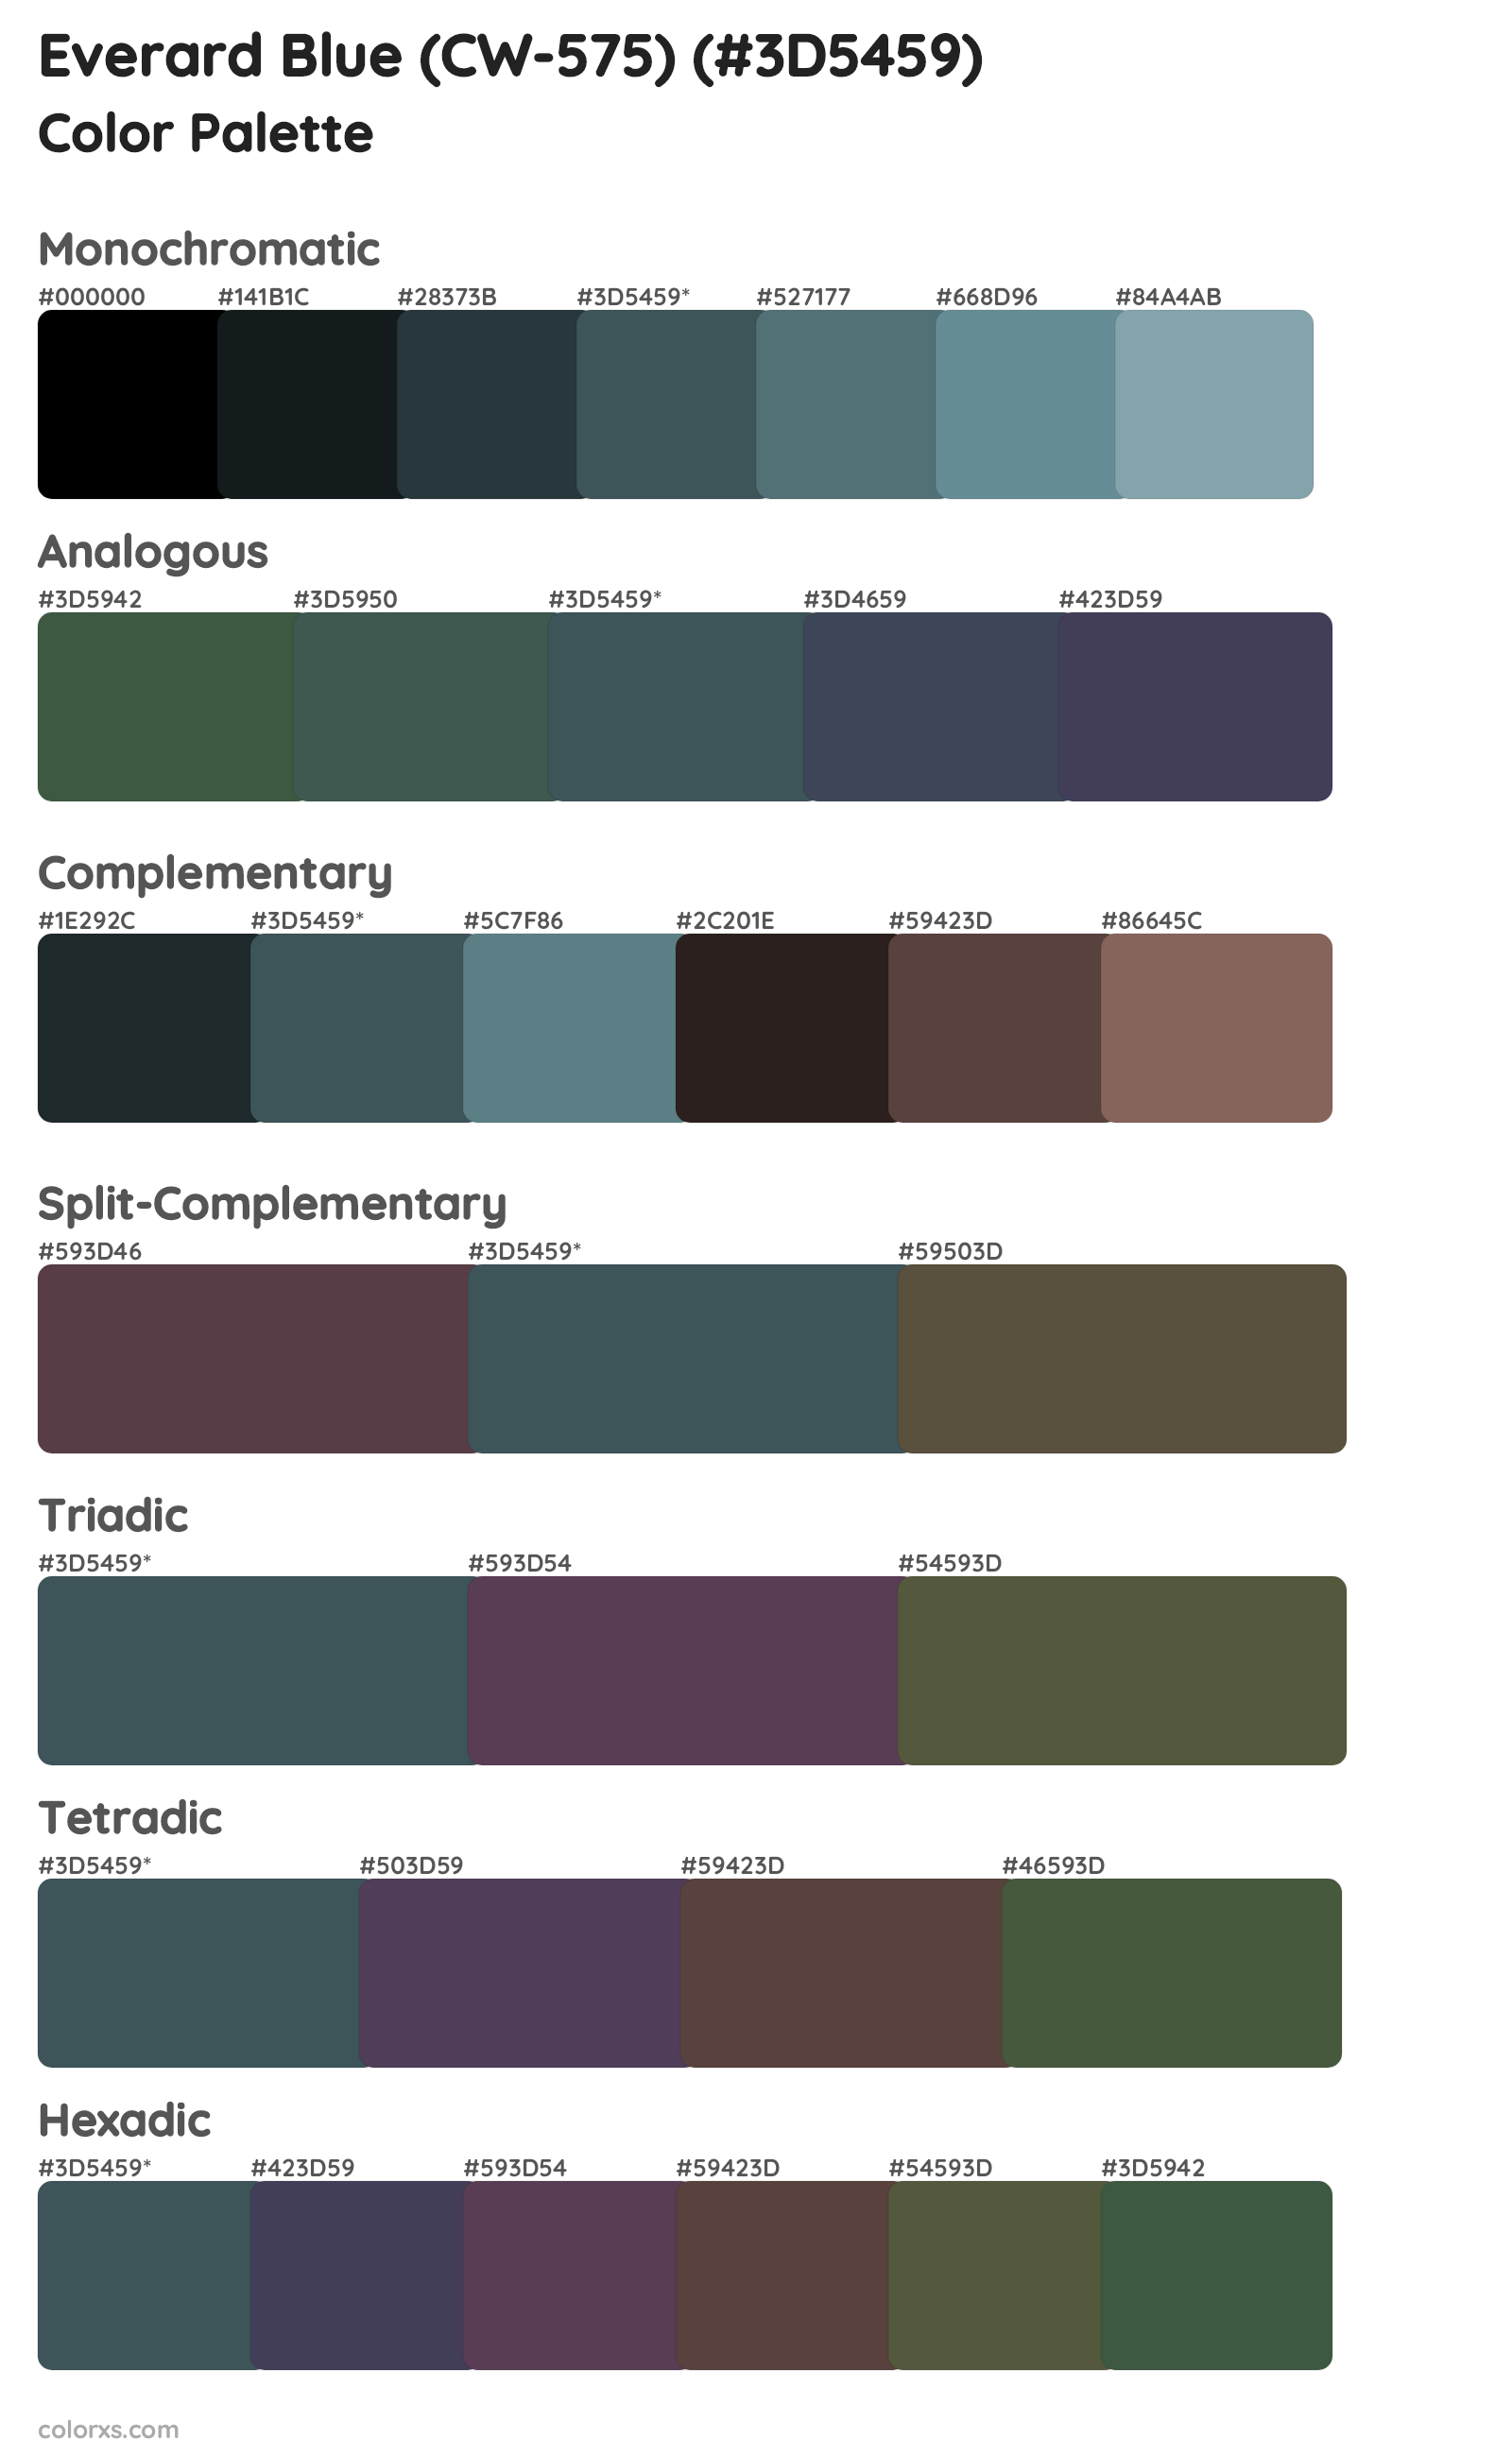 Everard Blue (CW-575) Color Scheme Palettes